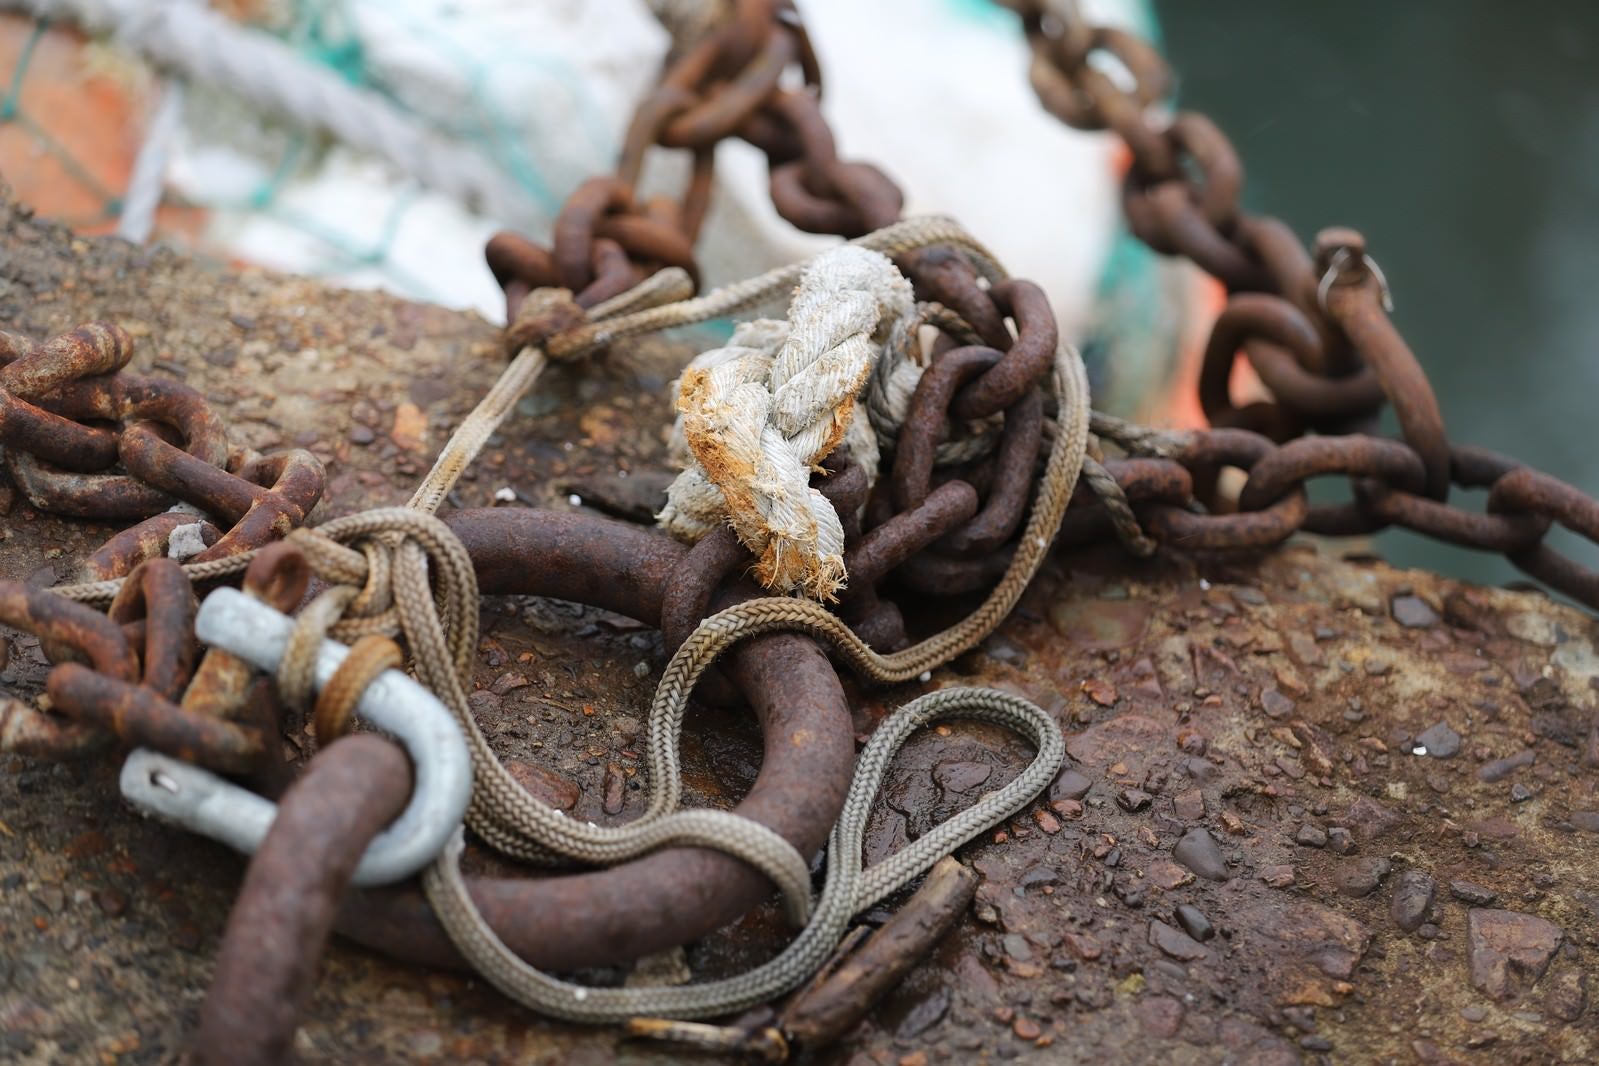 「船着き場の鎖とロープ」の写真